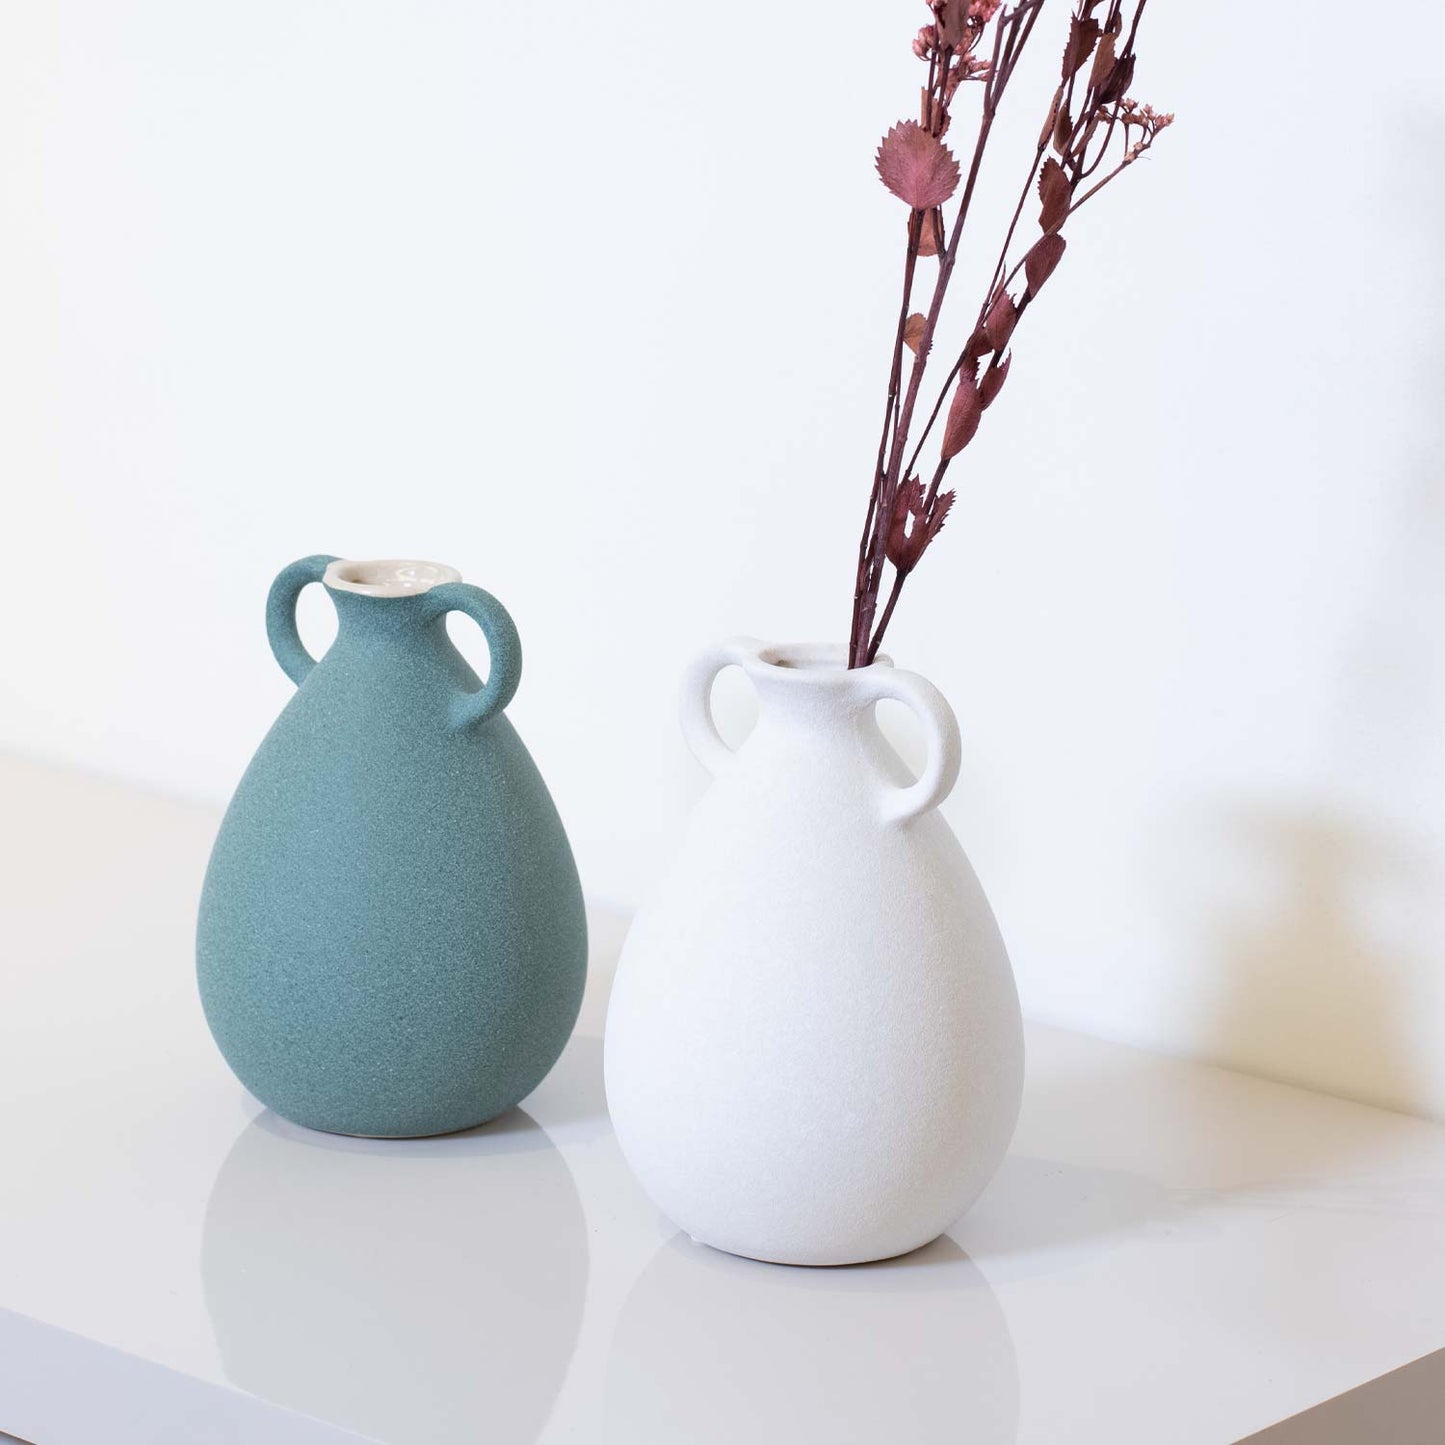 Vaso Decorativo em Cerâmica Arfould Menta 18 cm